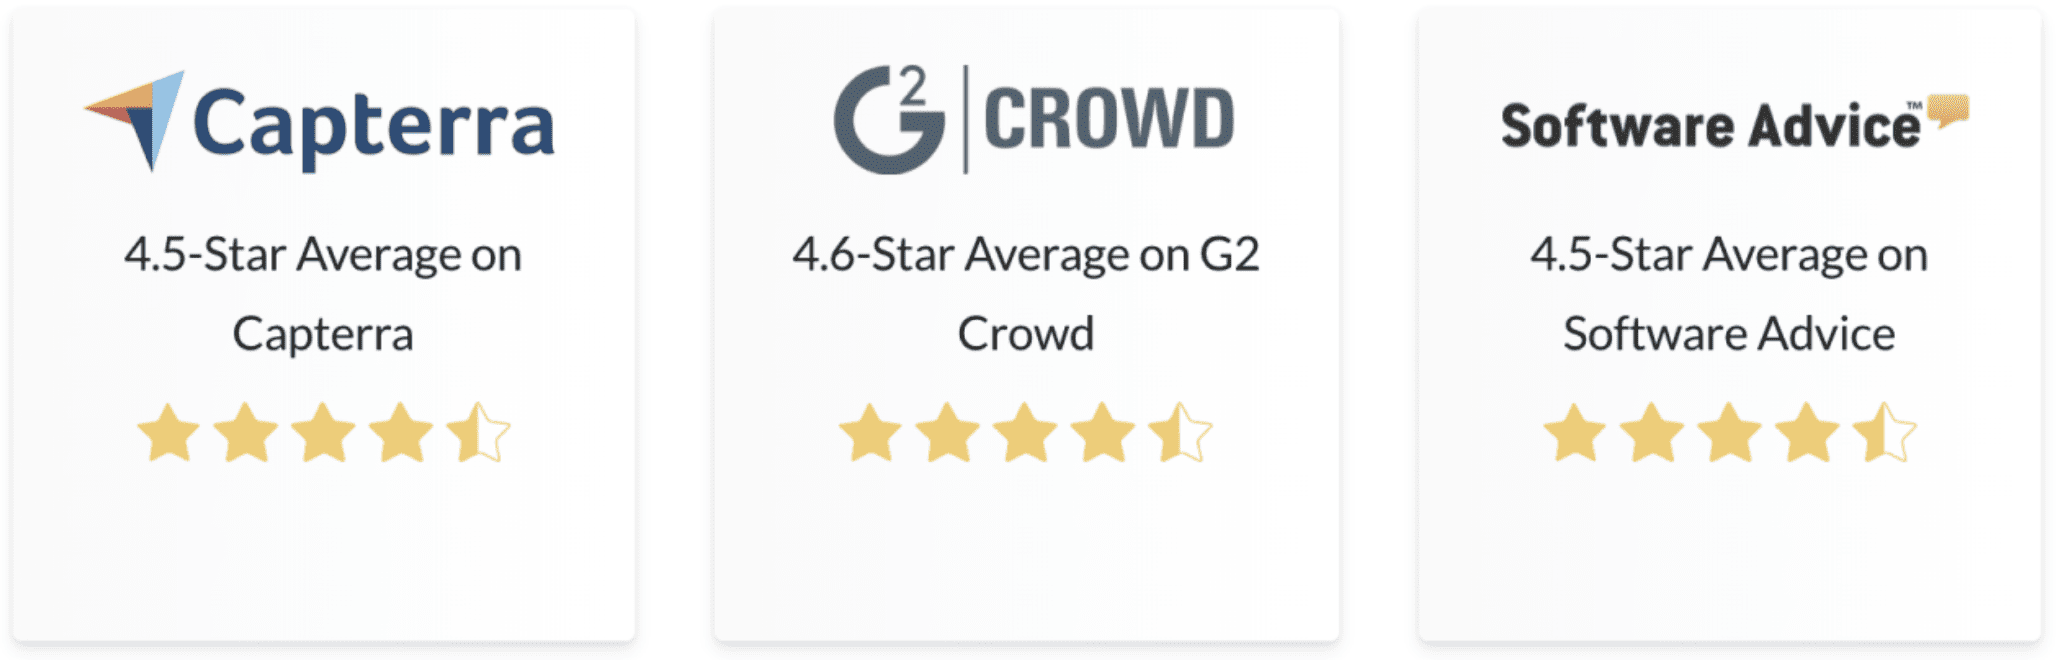 Star ratings reviews